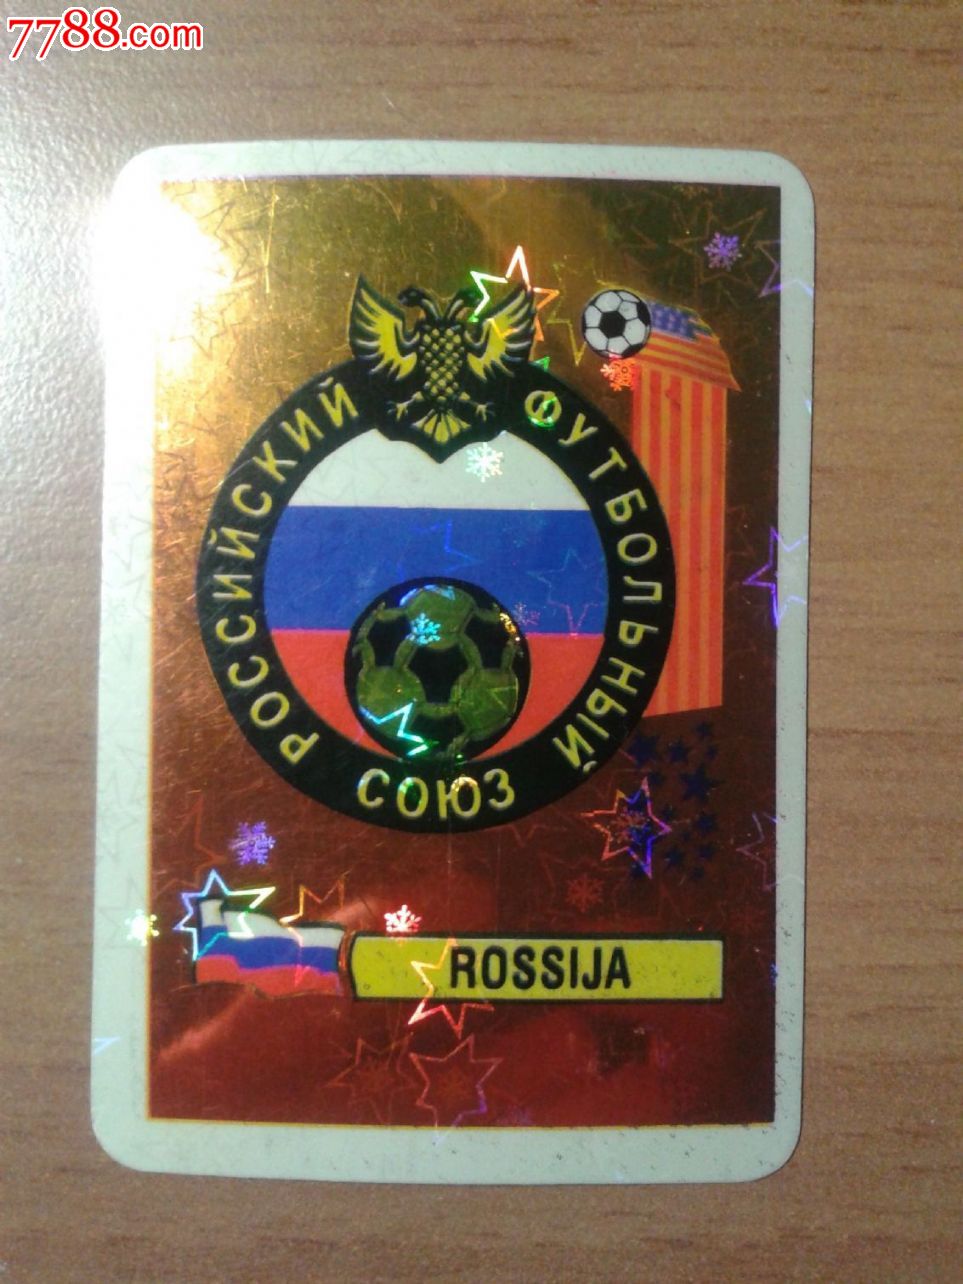 94世界杯球星卡国产金卡俄罗斯队徽-价格:5元